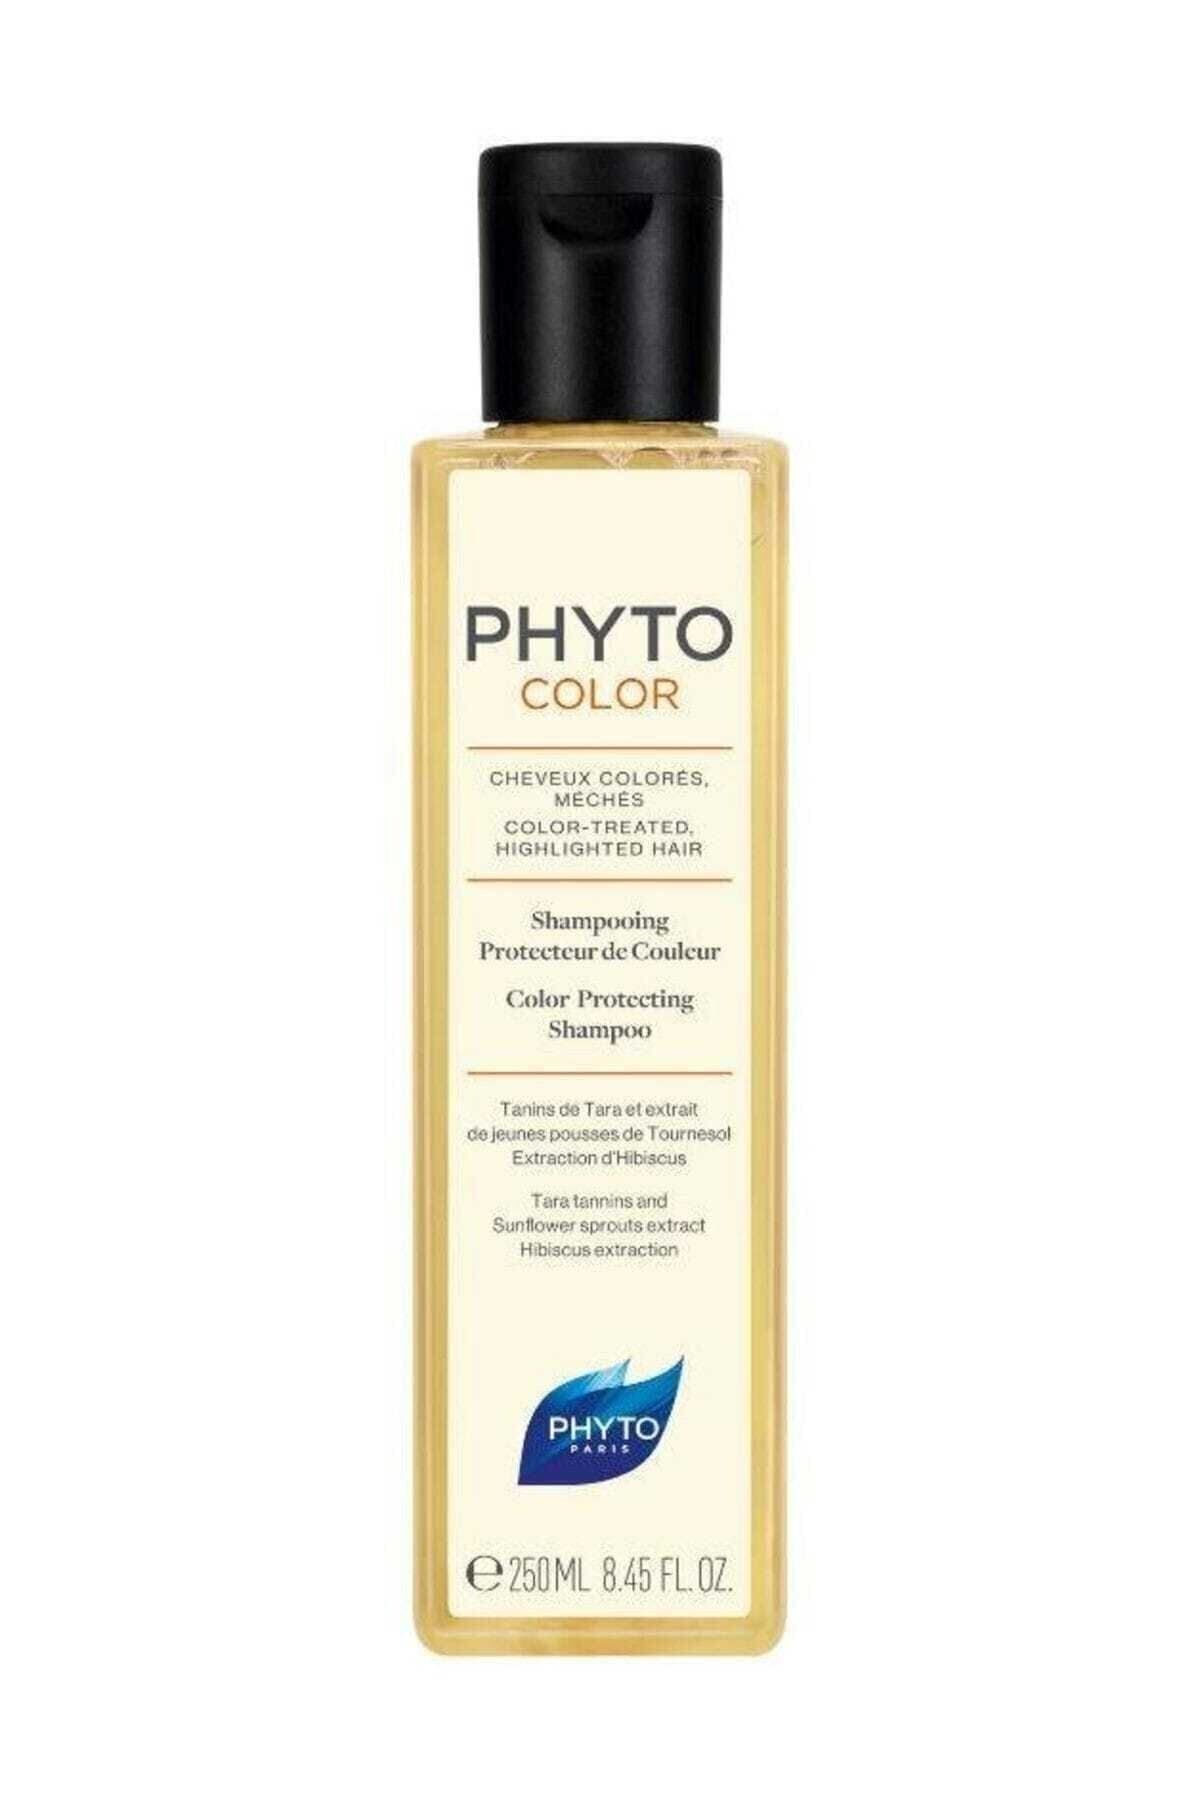 Phyto Color Shampoo Boyalı Ve Işlem Görmüş Saçlar Için Renk Koruyucu Sülfatsız Şampuan 250 ml